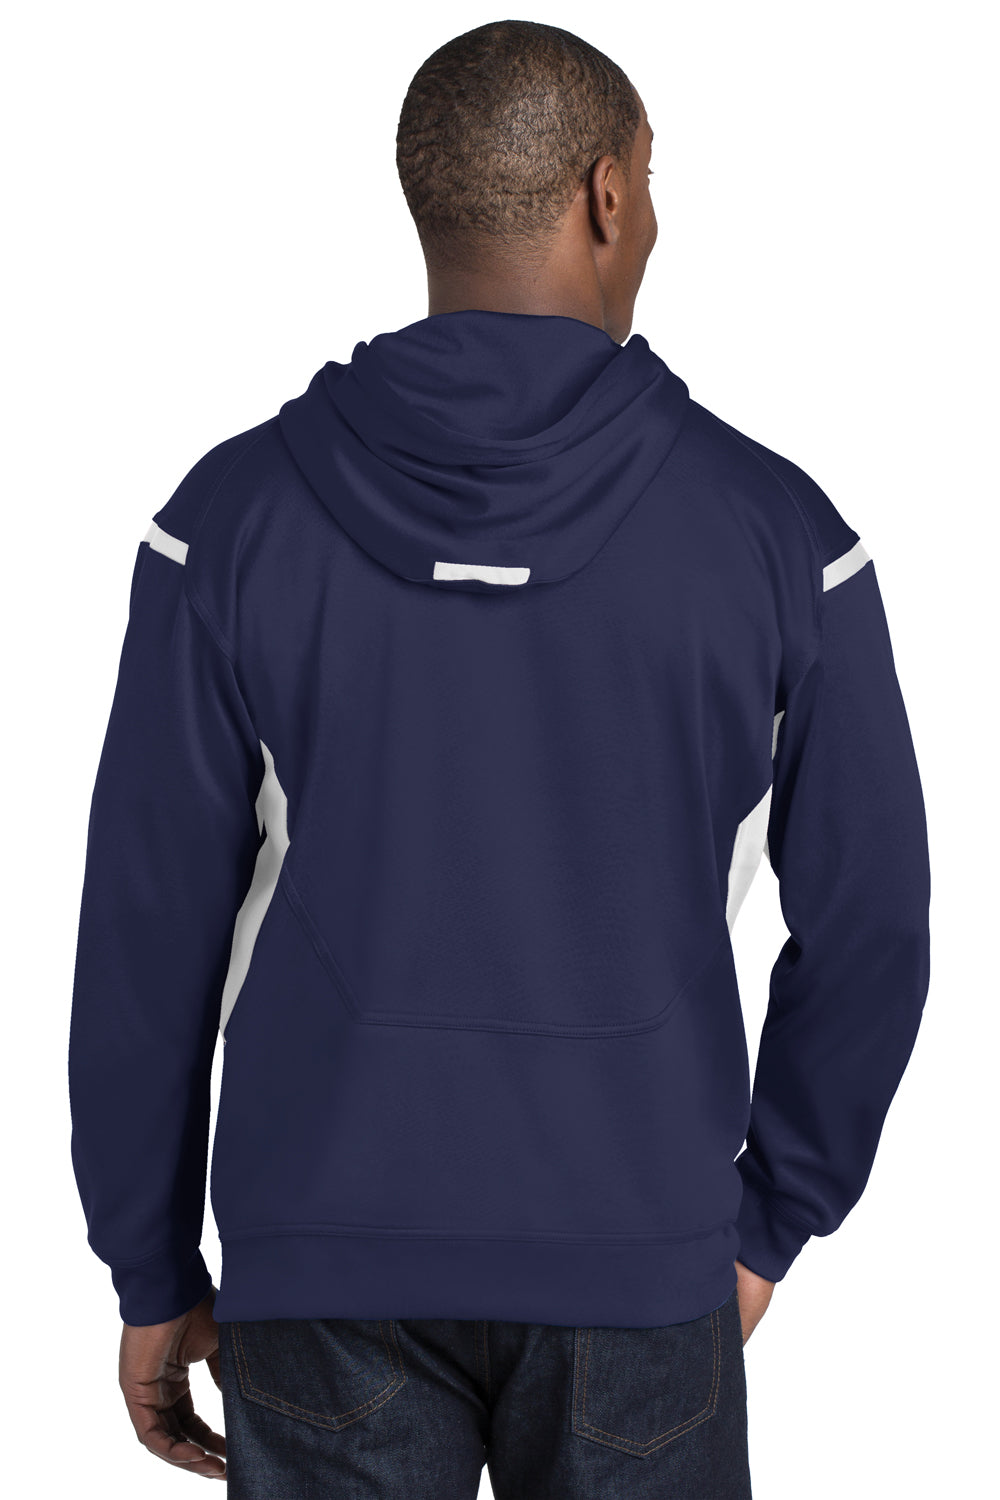 Sport-Tek F246 Mens Tech Moisture Wicking Fleece Hooded Sweatshirt Hoodie Navy Blue/White Back